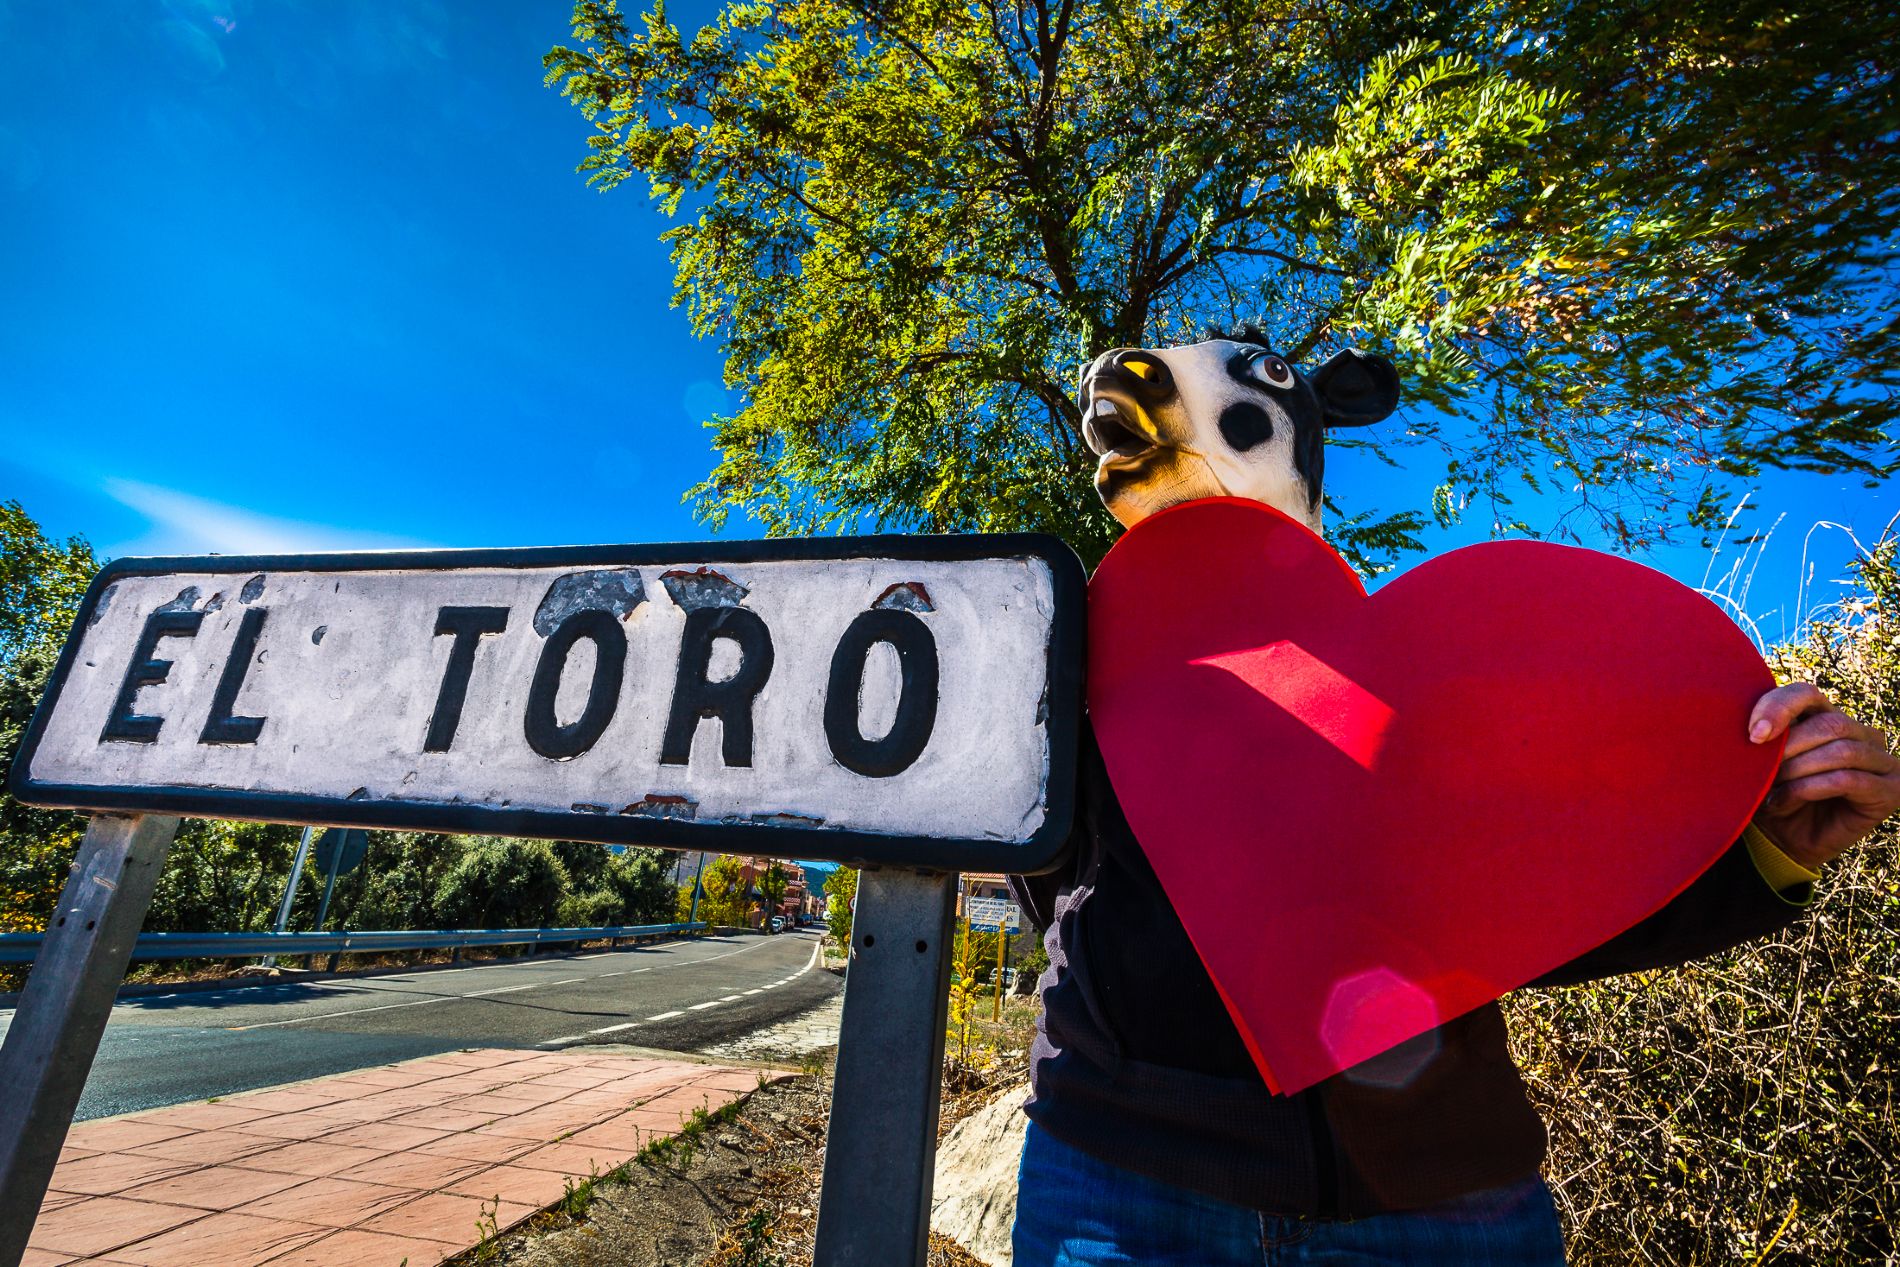 I love El Toro